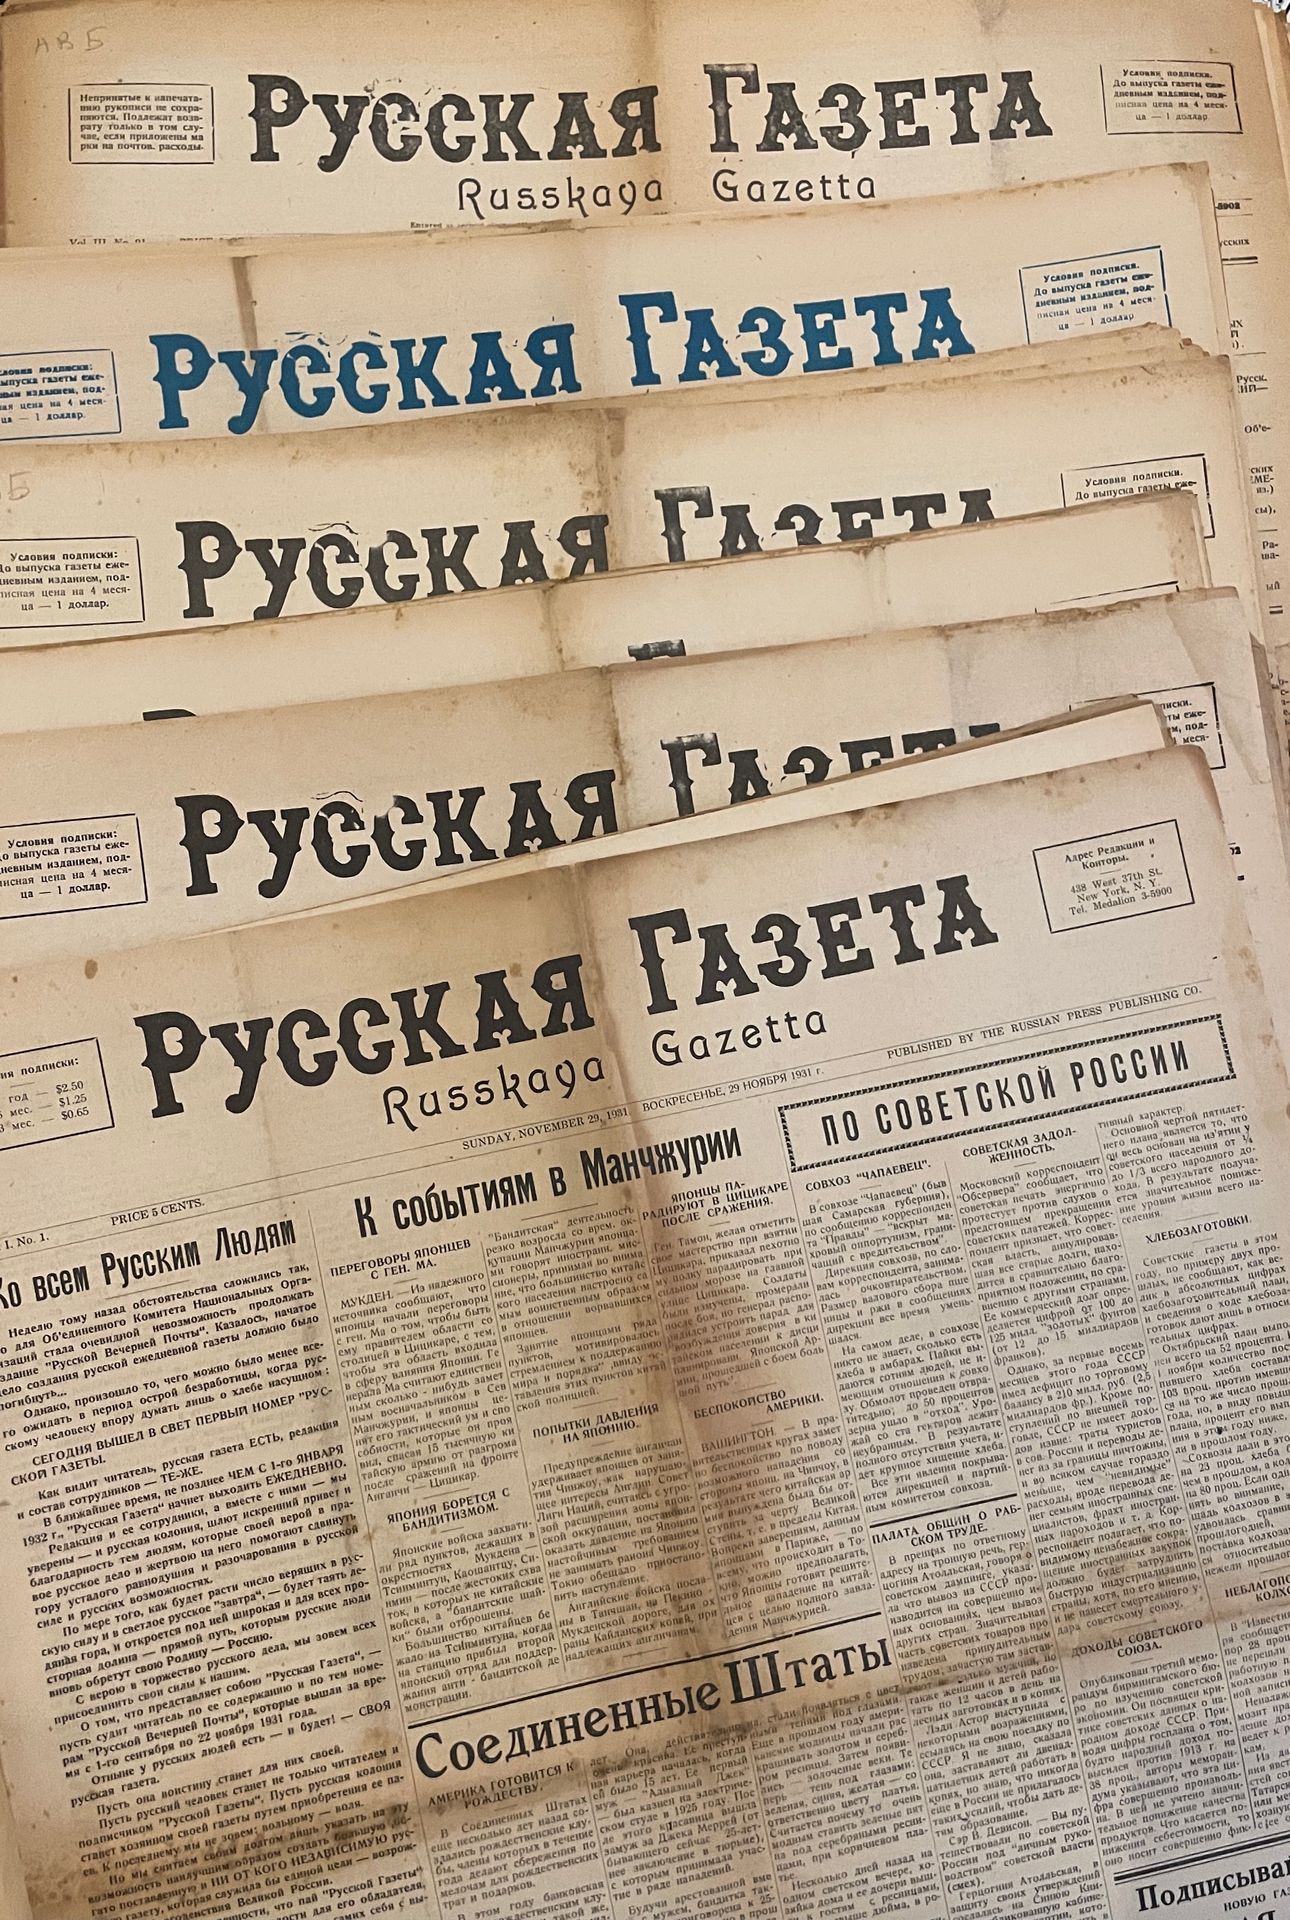 Null PERIÓDICOS PATRIÓTICOS de la emigración rusa

"Diario ruso". 1931-1934. 

П&hellip;